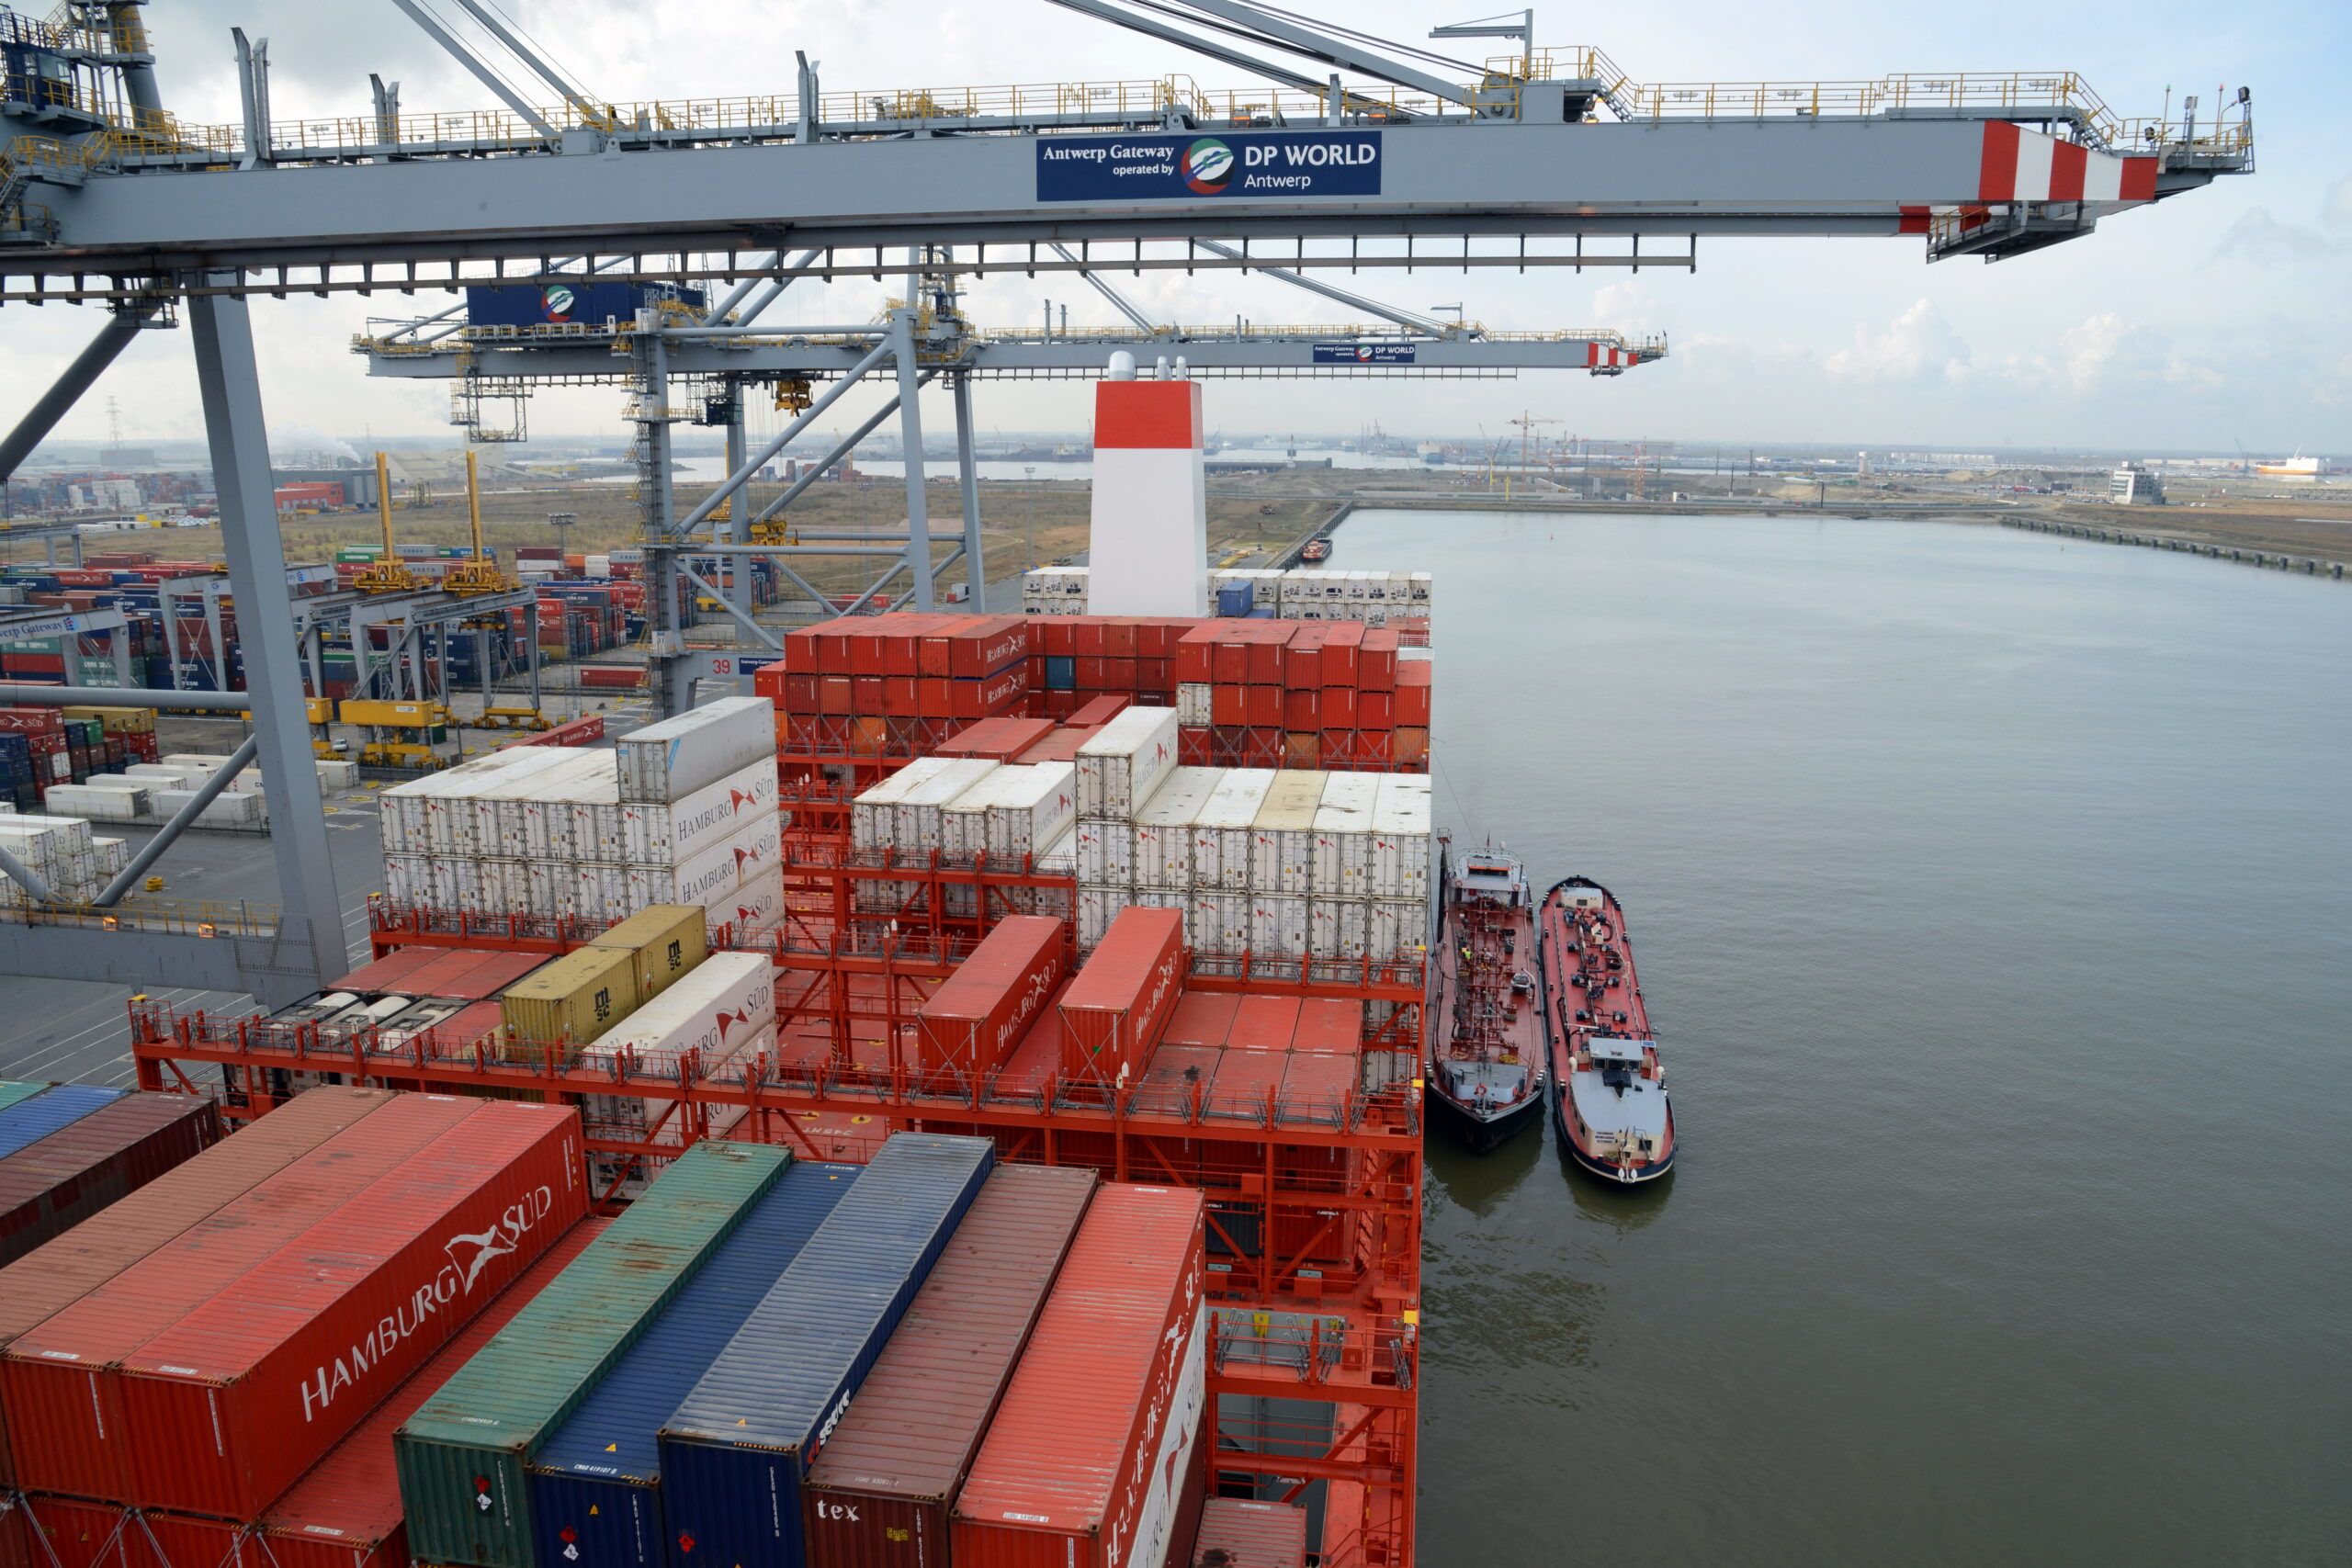 El puerto de Amberes-Brujas espera triplicar su presencia en el mundo en los próximos años. (Port of Antwerp-Bruges)